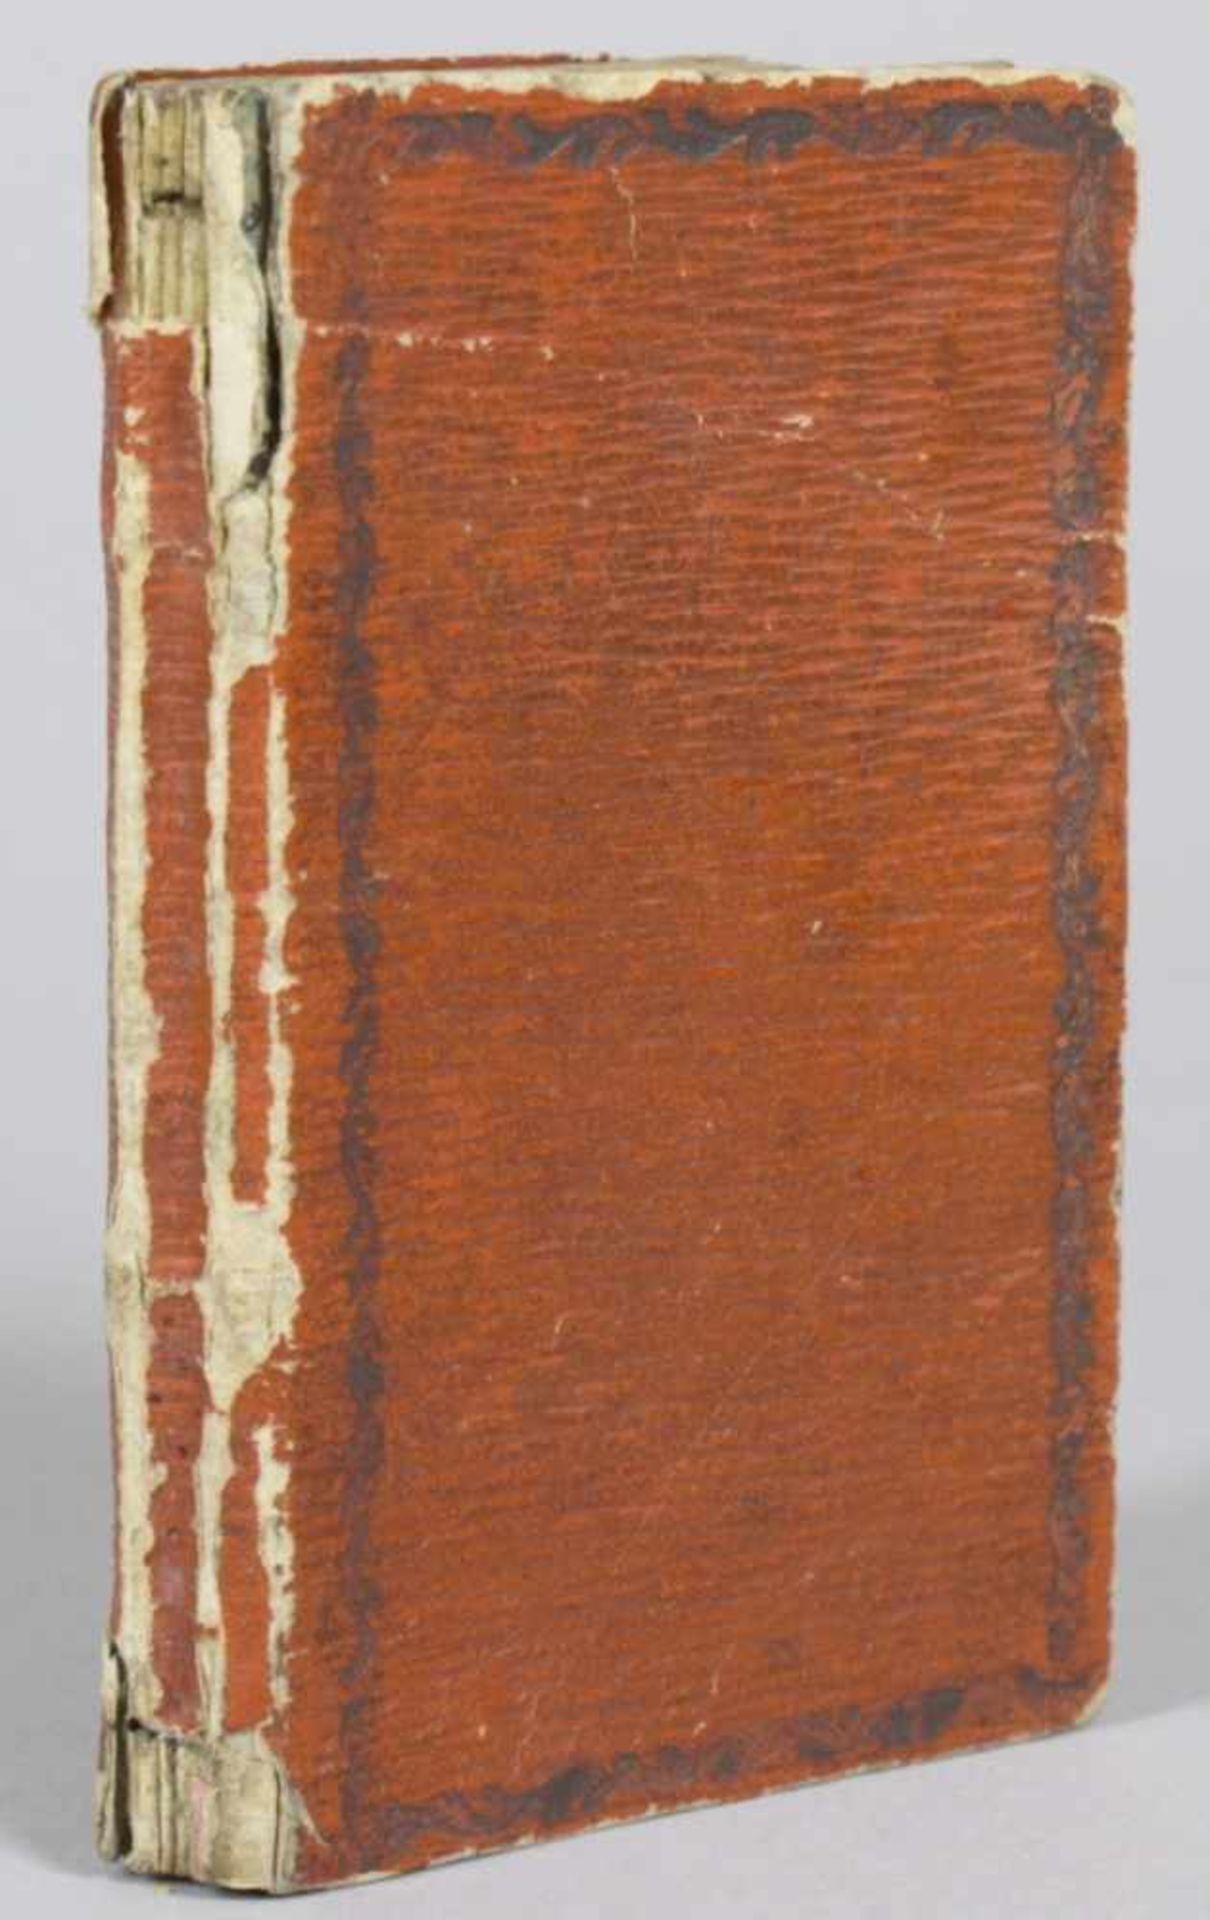 Taschenkalender, 1824, HofbuchdruckerJohan BaptistReindl, Bamberg, Gebrauchsspuren, Rückenteils - Bild 3 aus 3